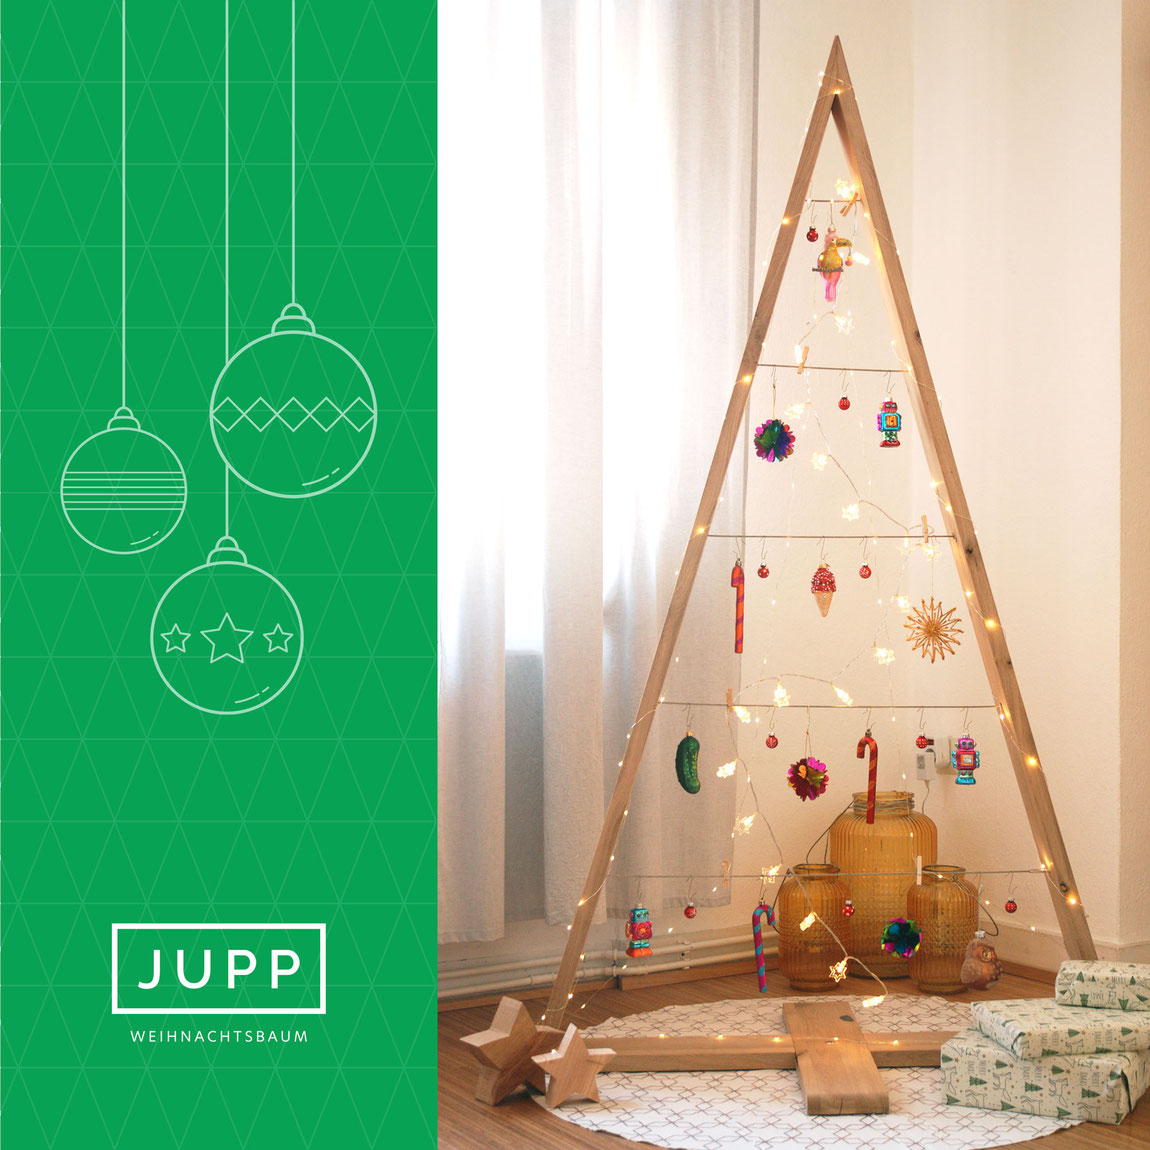 JUPP nachhaltiger Weihnachtsbaum geschmückt